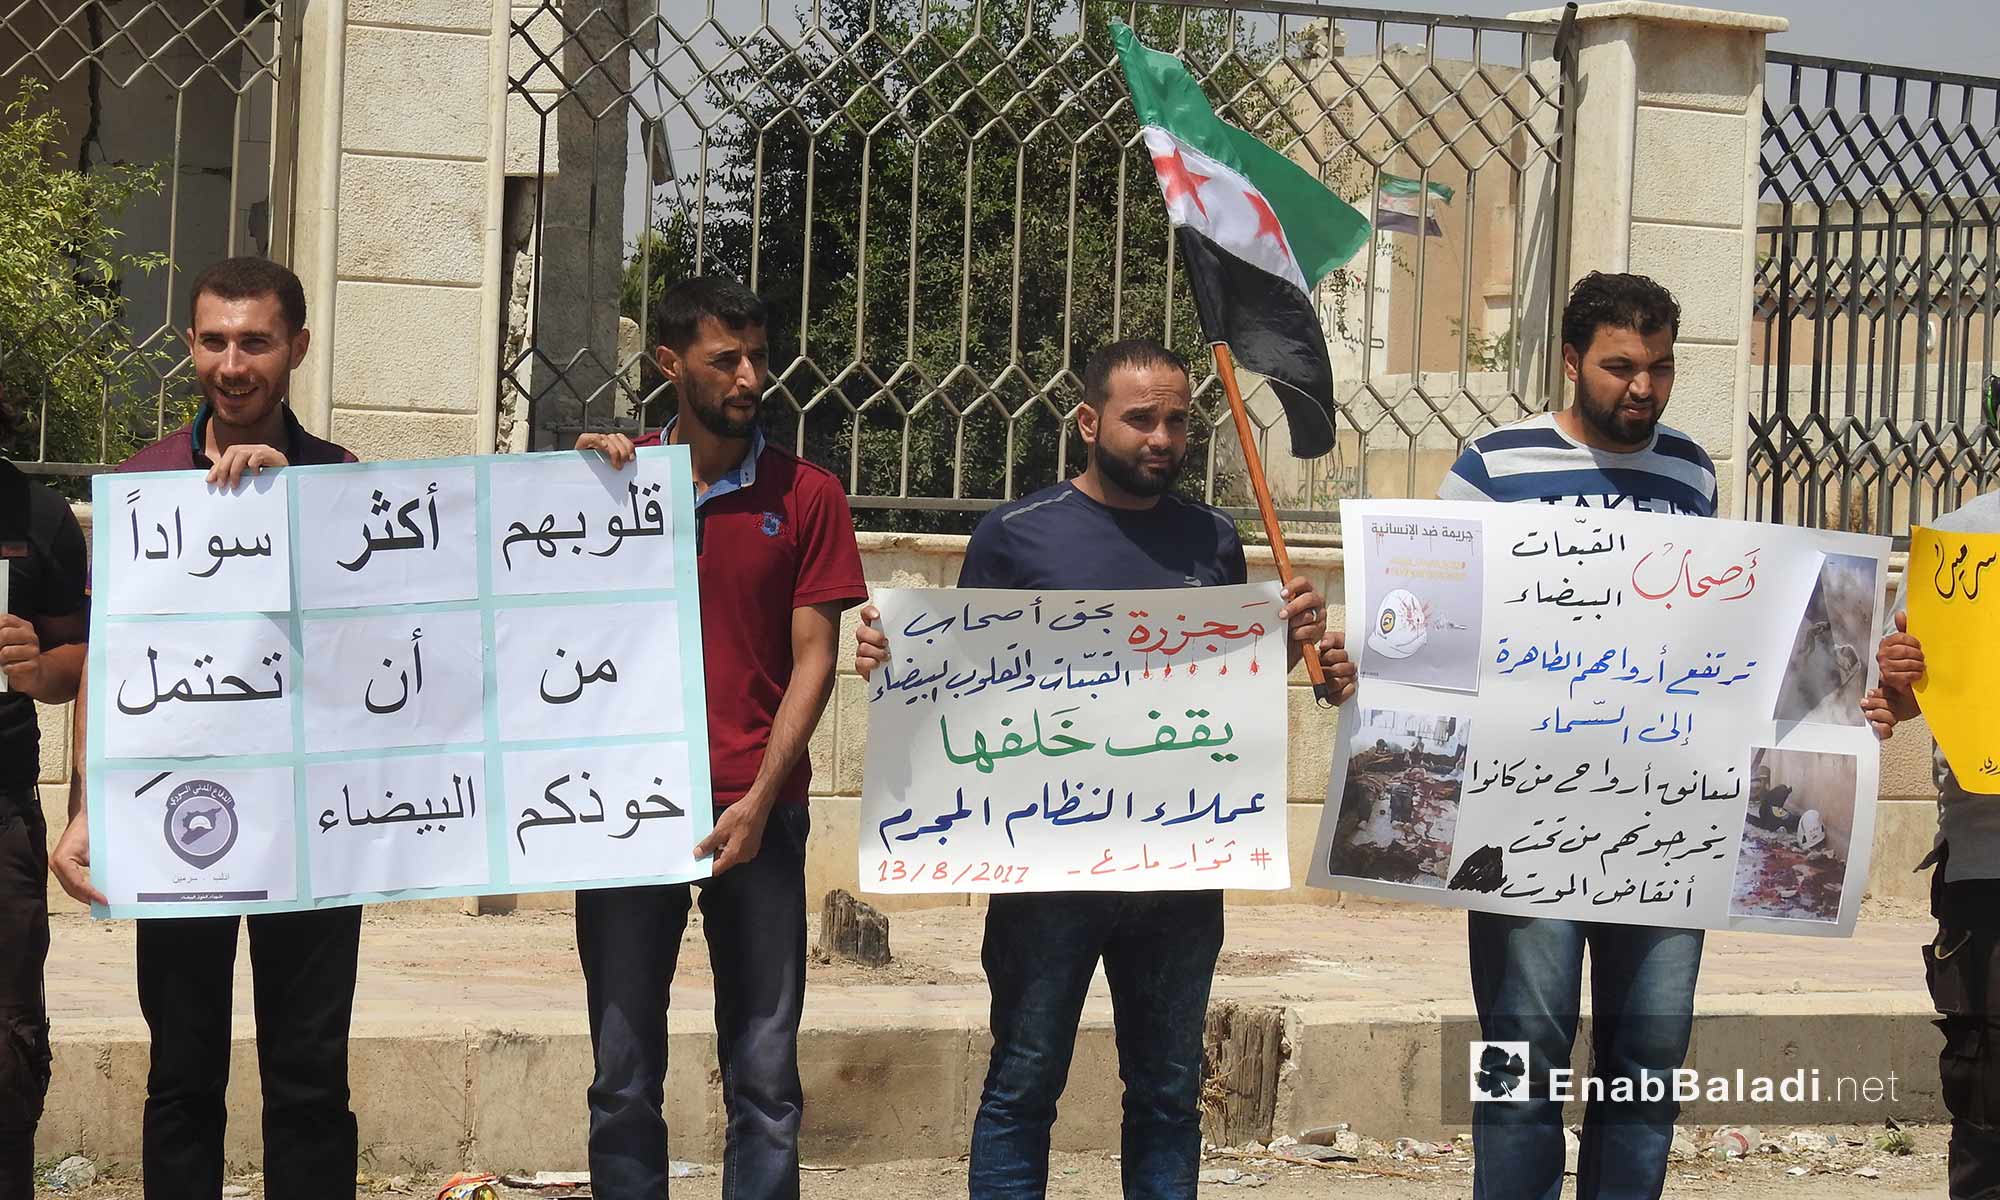 وقفة تضامنية لعناصر الدفاع المدني في مارع بريف حلب الشمالي تضامنًا مع ضحايا المنظمة في سرمين - 13 آب 2017 (عنب بلدي)